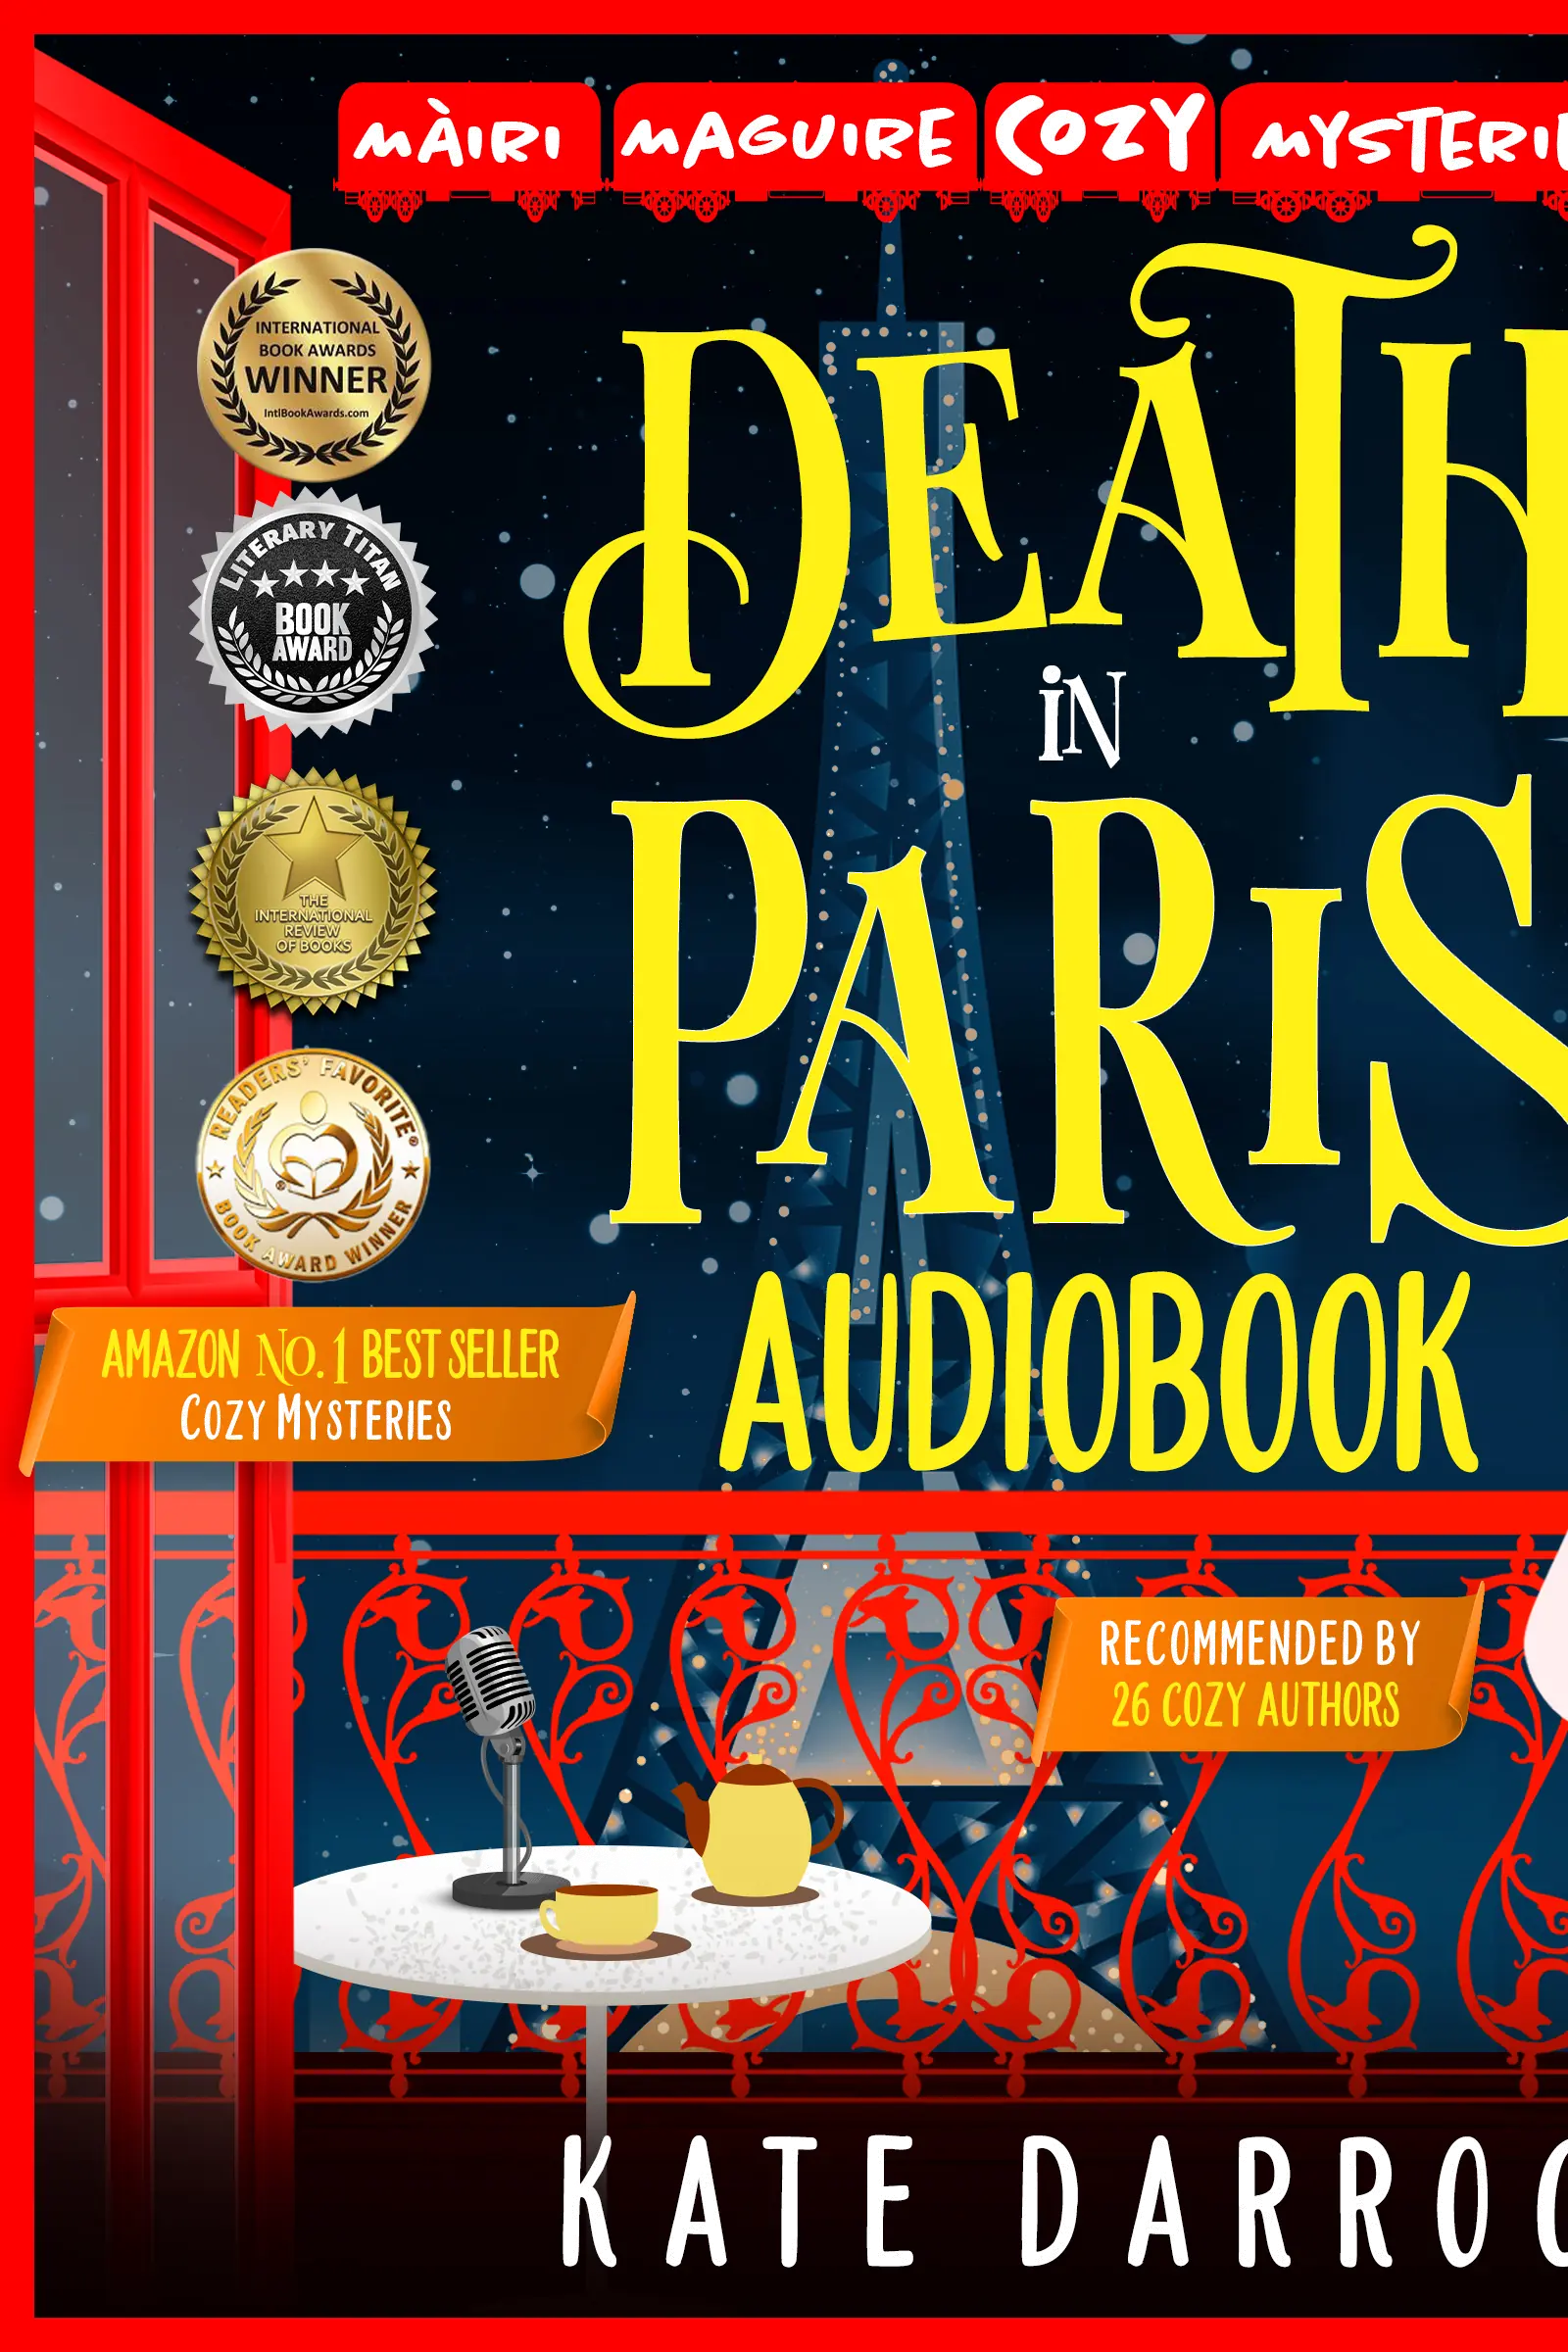 Death in Paris by Kate Darroch